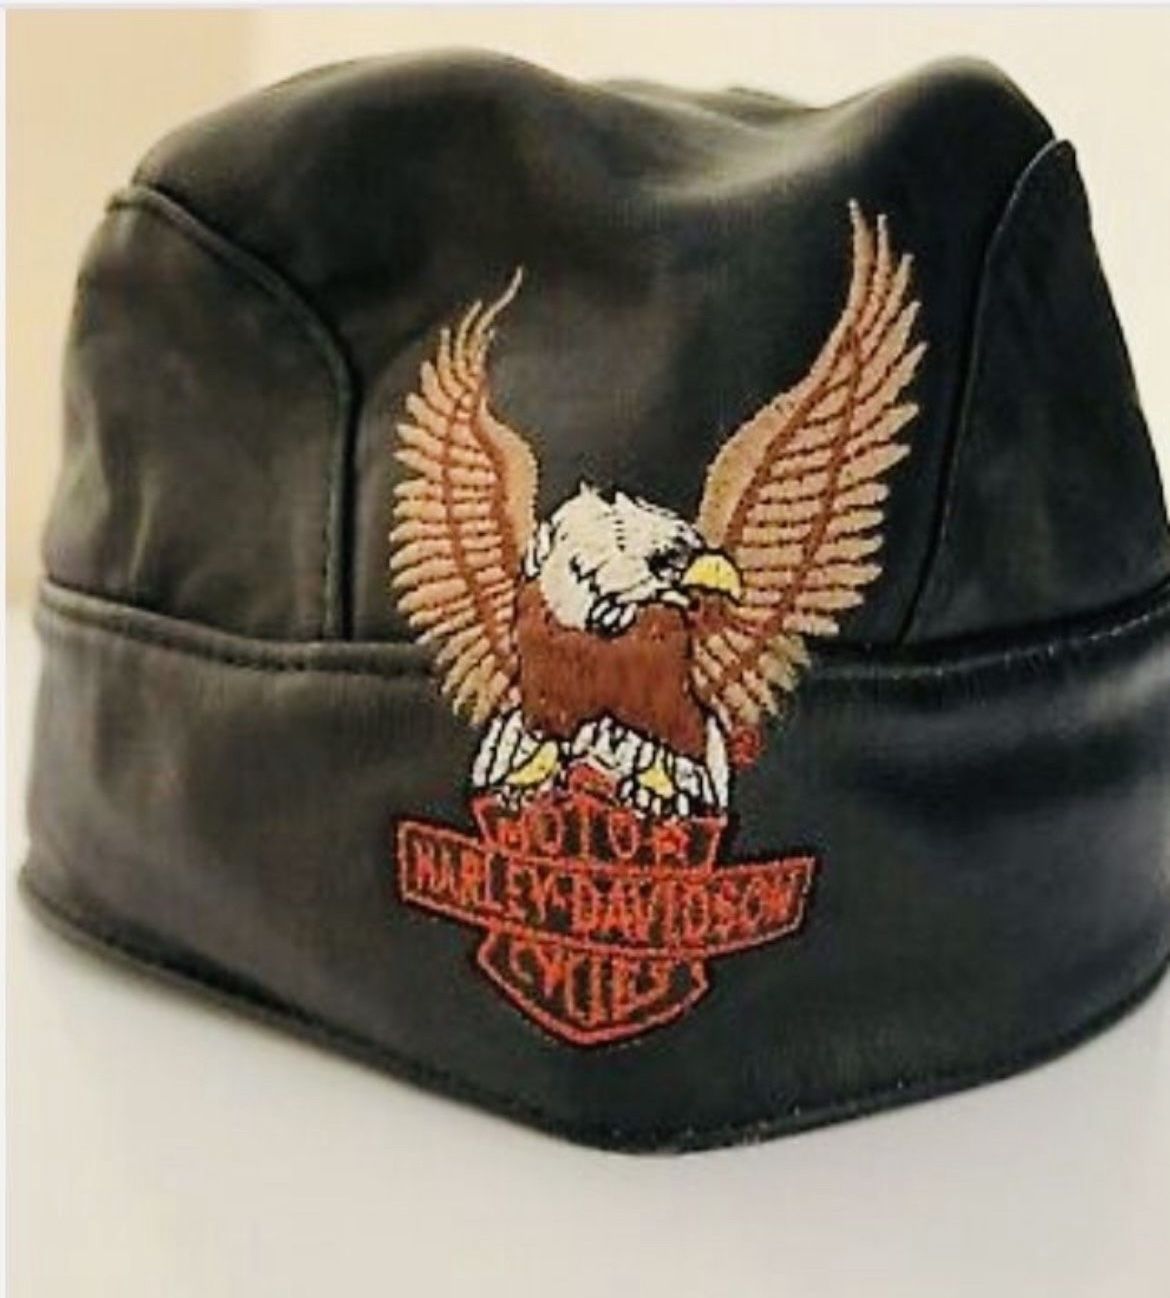 Harley Davidson Genuine Leather Skull Cap and a Vintage 1999 Black Harley Davidson Motorcycle Helmet With Visor…